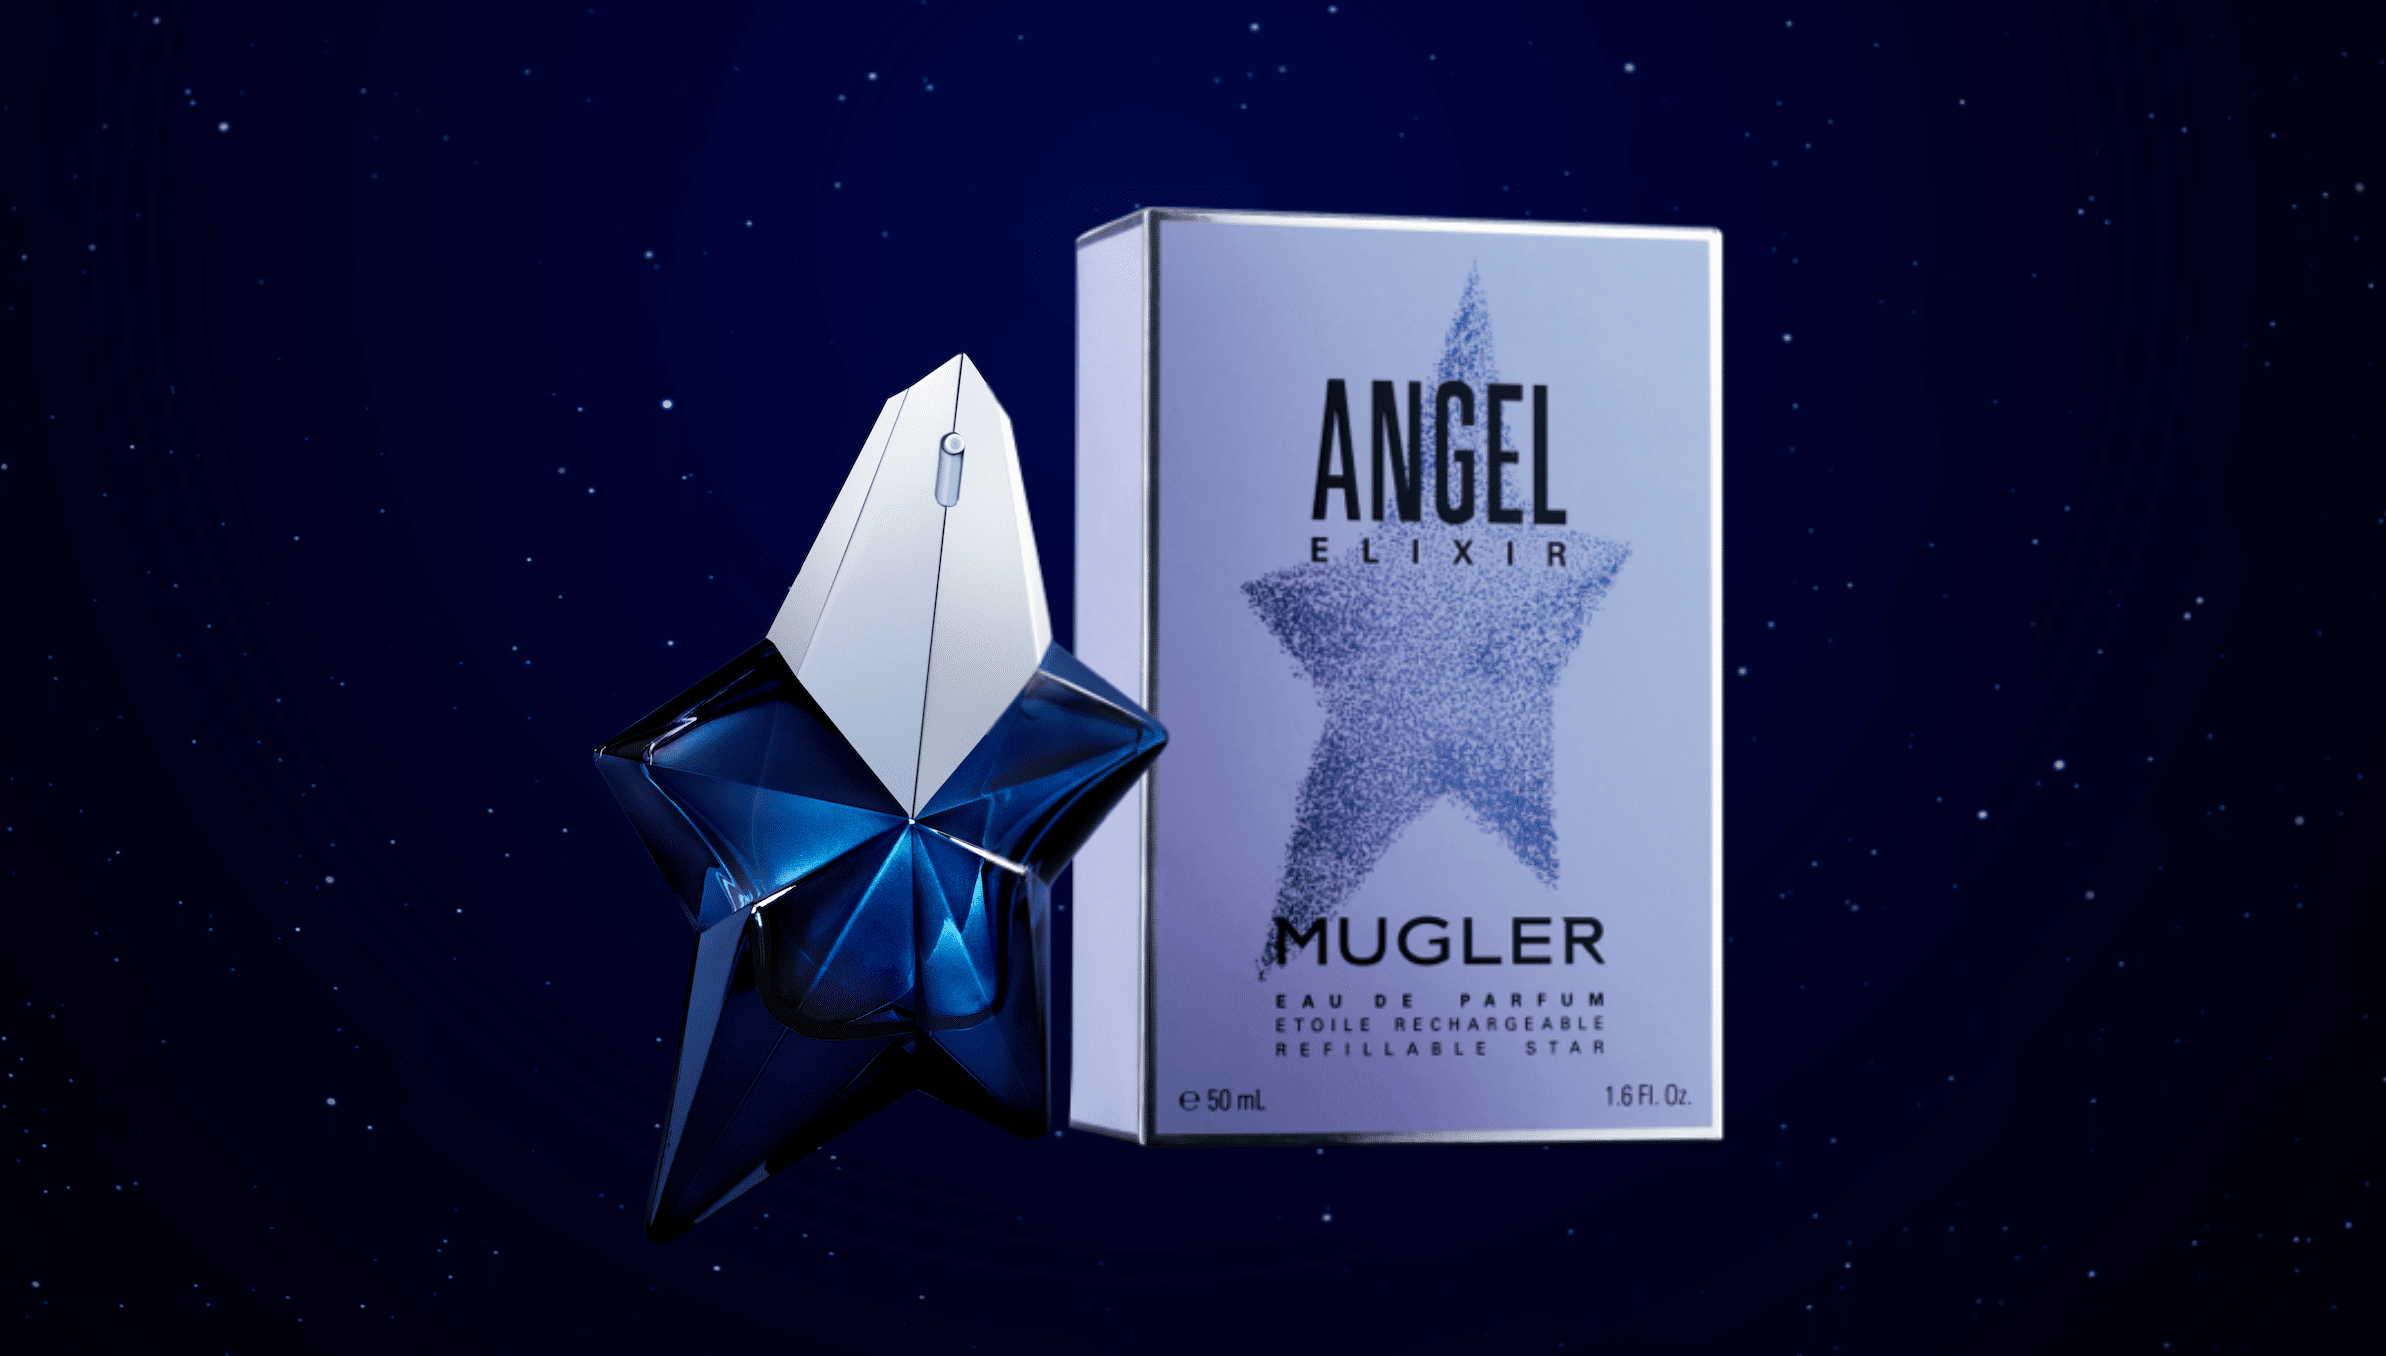 Mugler Angel Elixir Sample perfume from Sampler